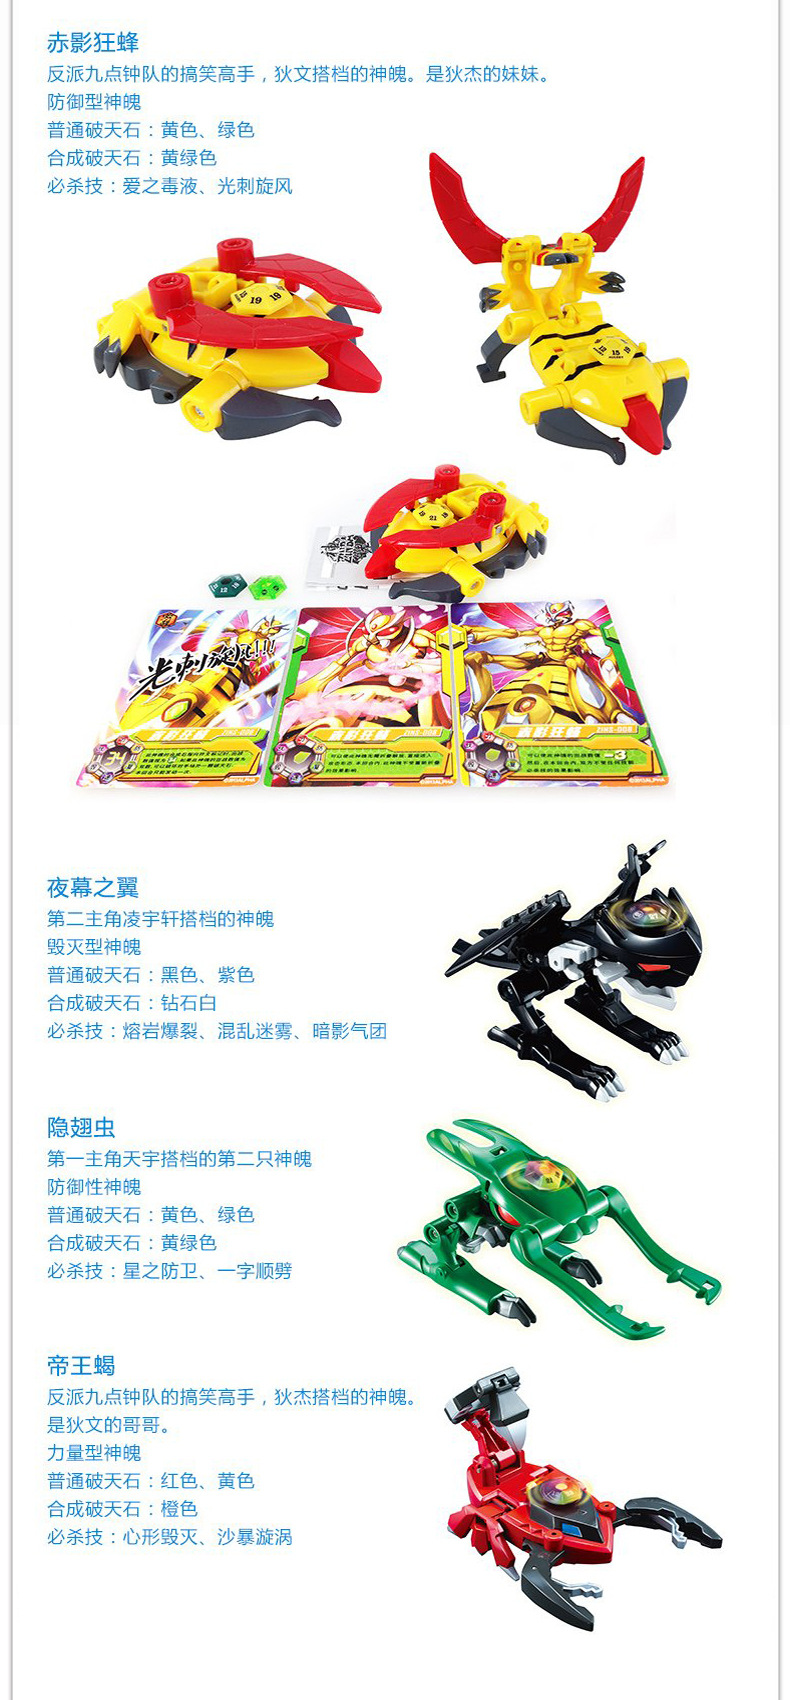 神魄 奥迪双钻2013最新产品 全球首款变身对战型玩具 赤焰雄狮